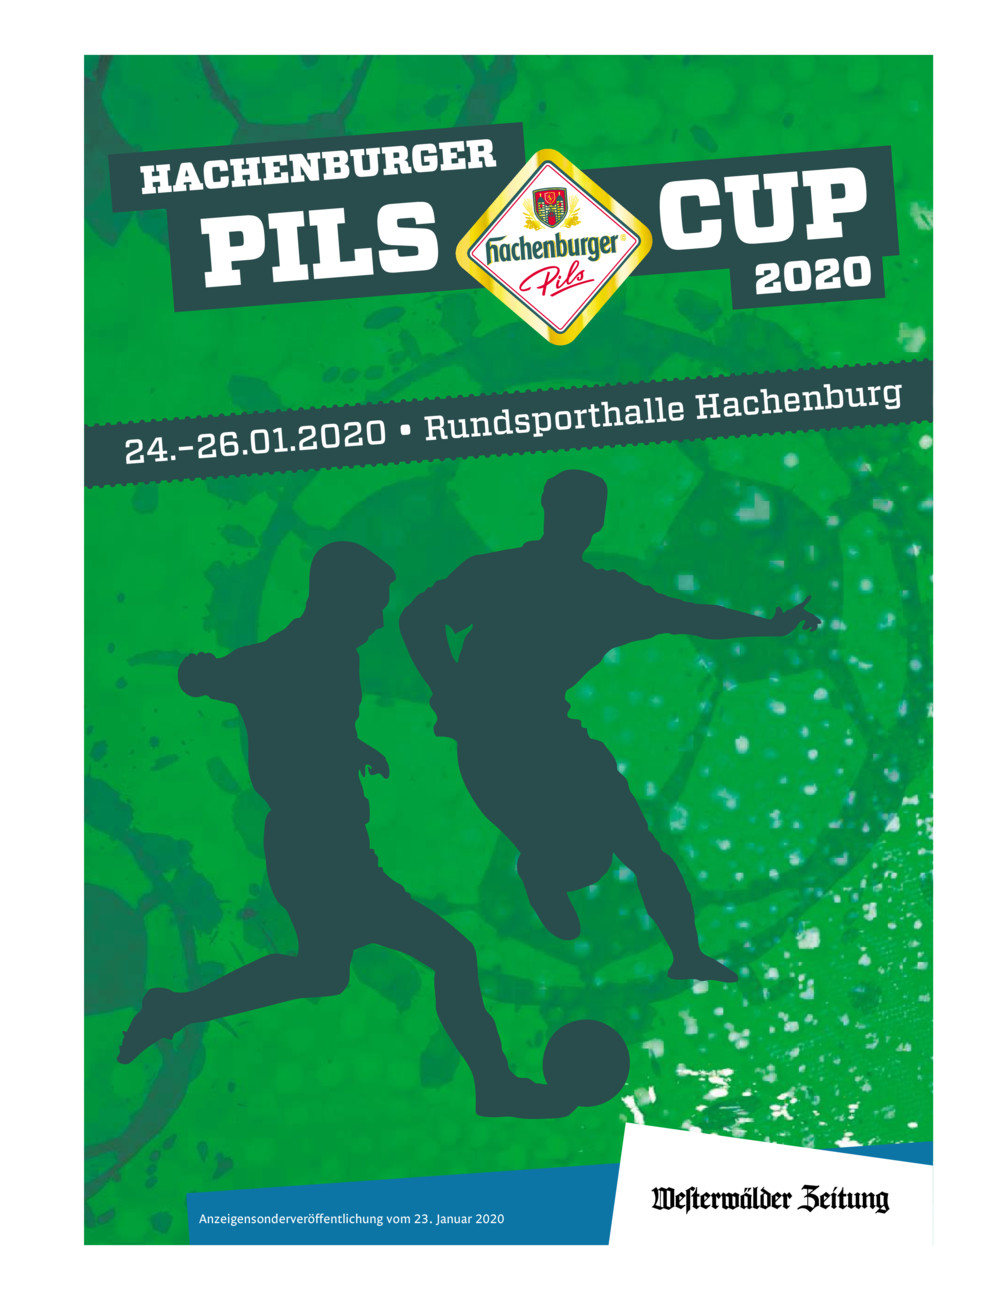 Hachenburger Pils Cup 2020